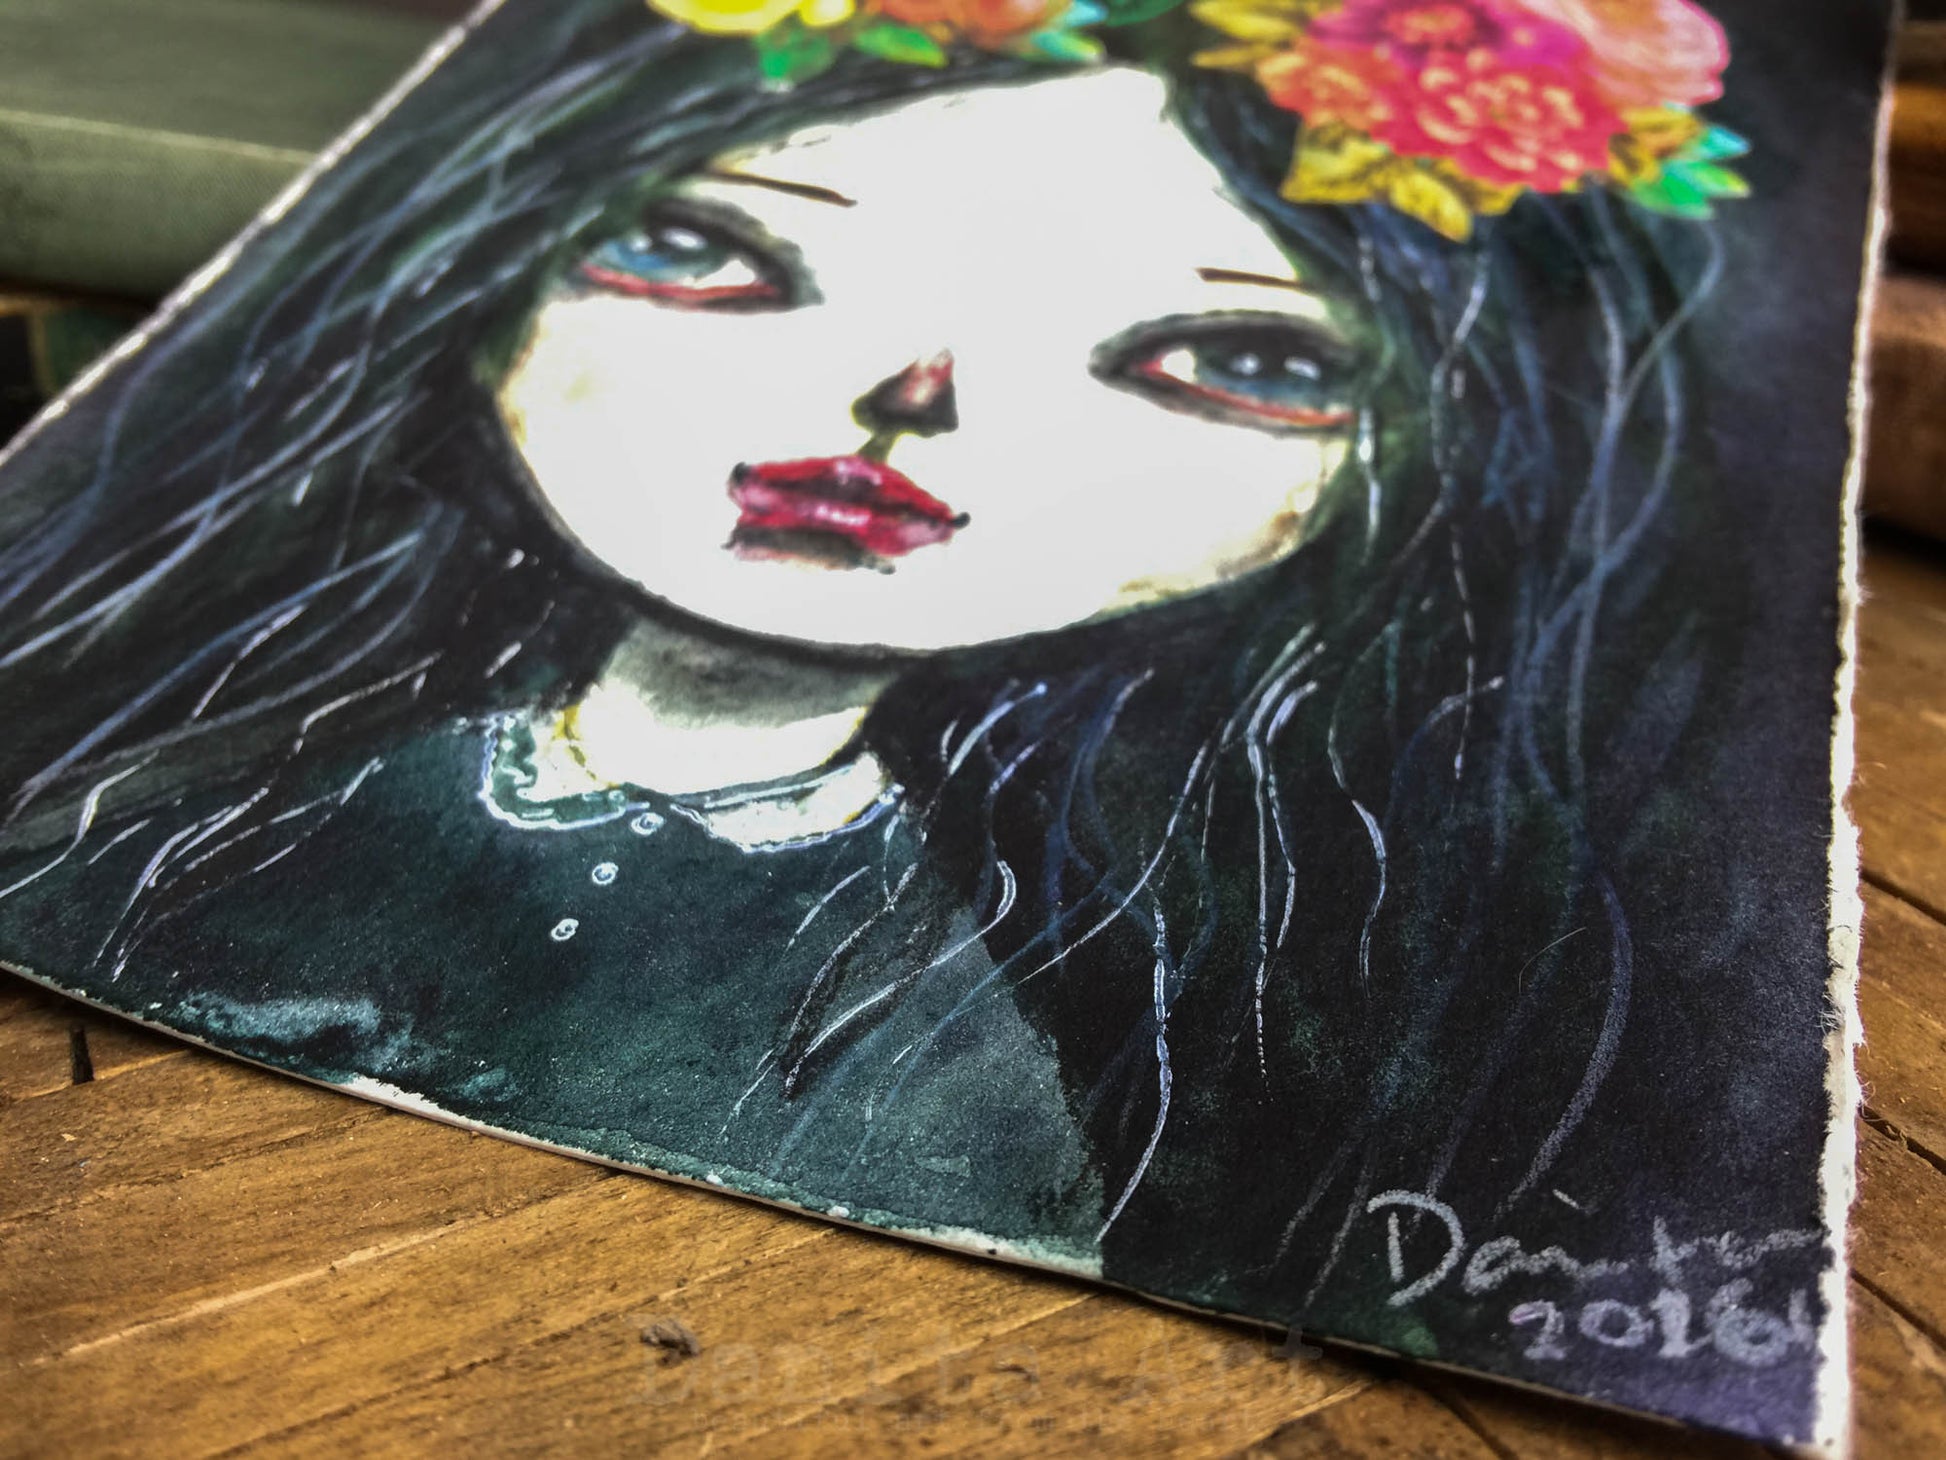 Black Dhalia, Original Art by Danita Art